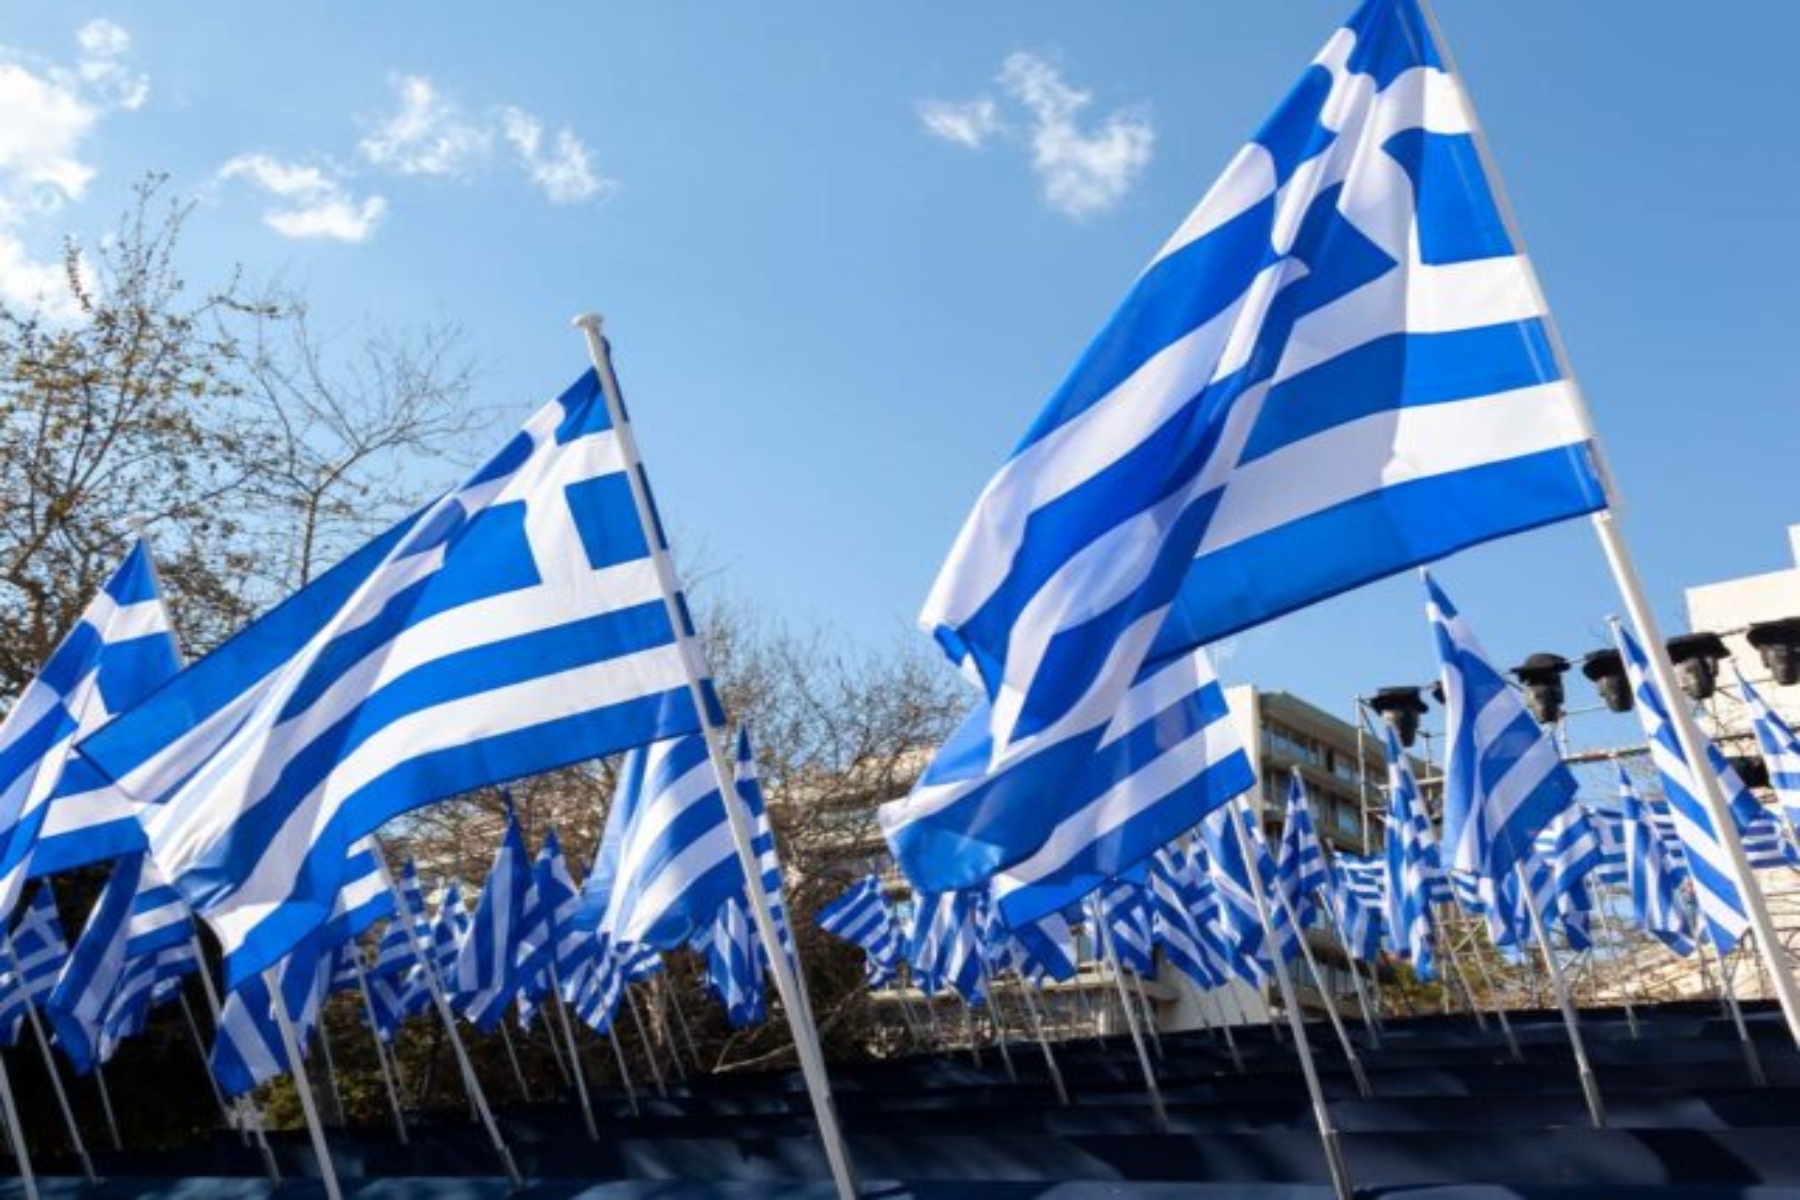 25η Μαρτίου: Εορτασμός της Ελληνικής Επανάστασης & του Ευαγγελισμού της Θεοτόκου